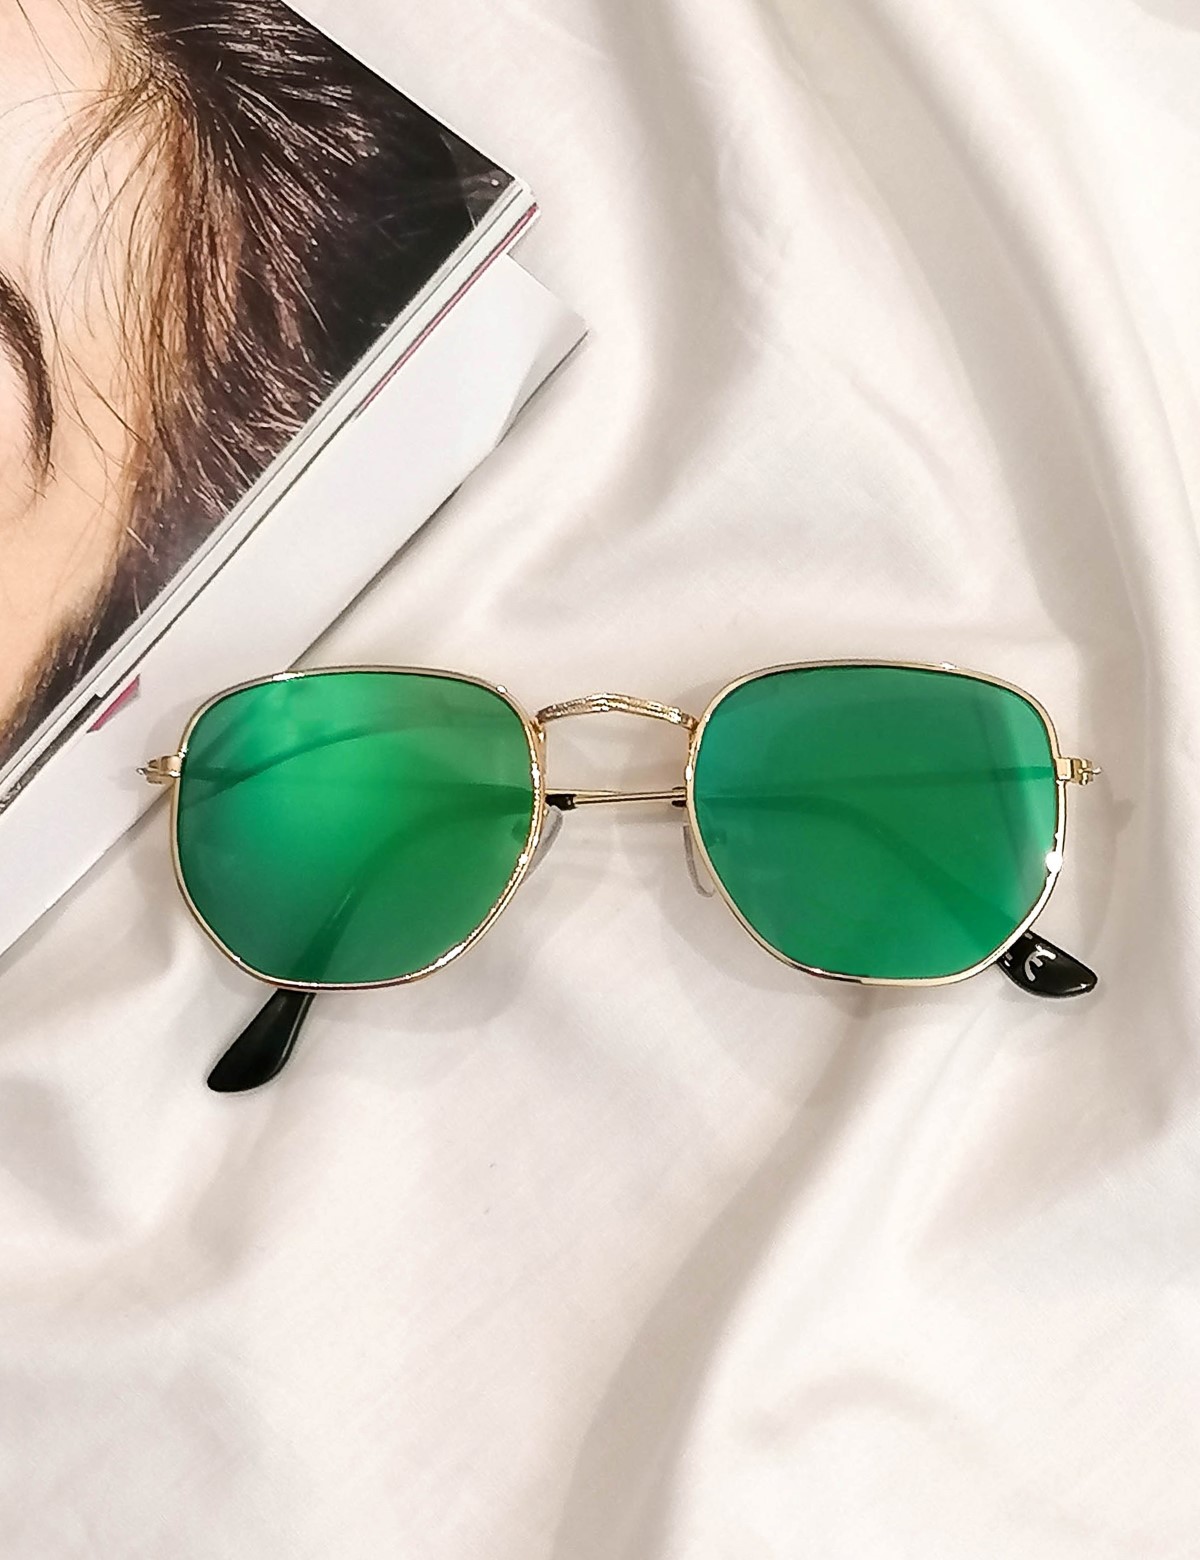 Γυναικεία πράσινο πολύγωνα γυαλιά ηλίου καθρέπτης με χρυσό σκελετό Luxury LS3065P